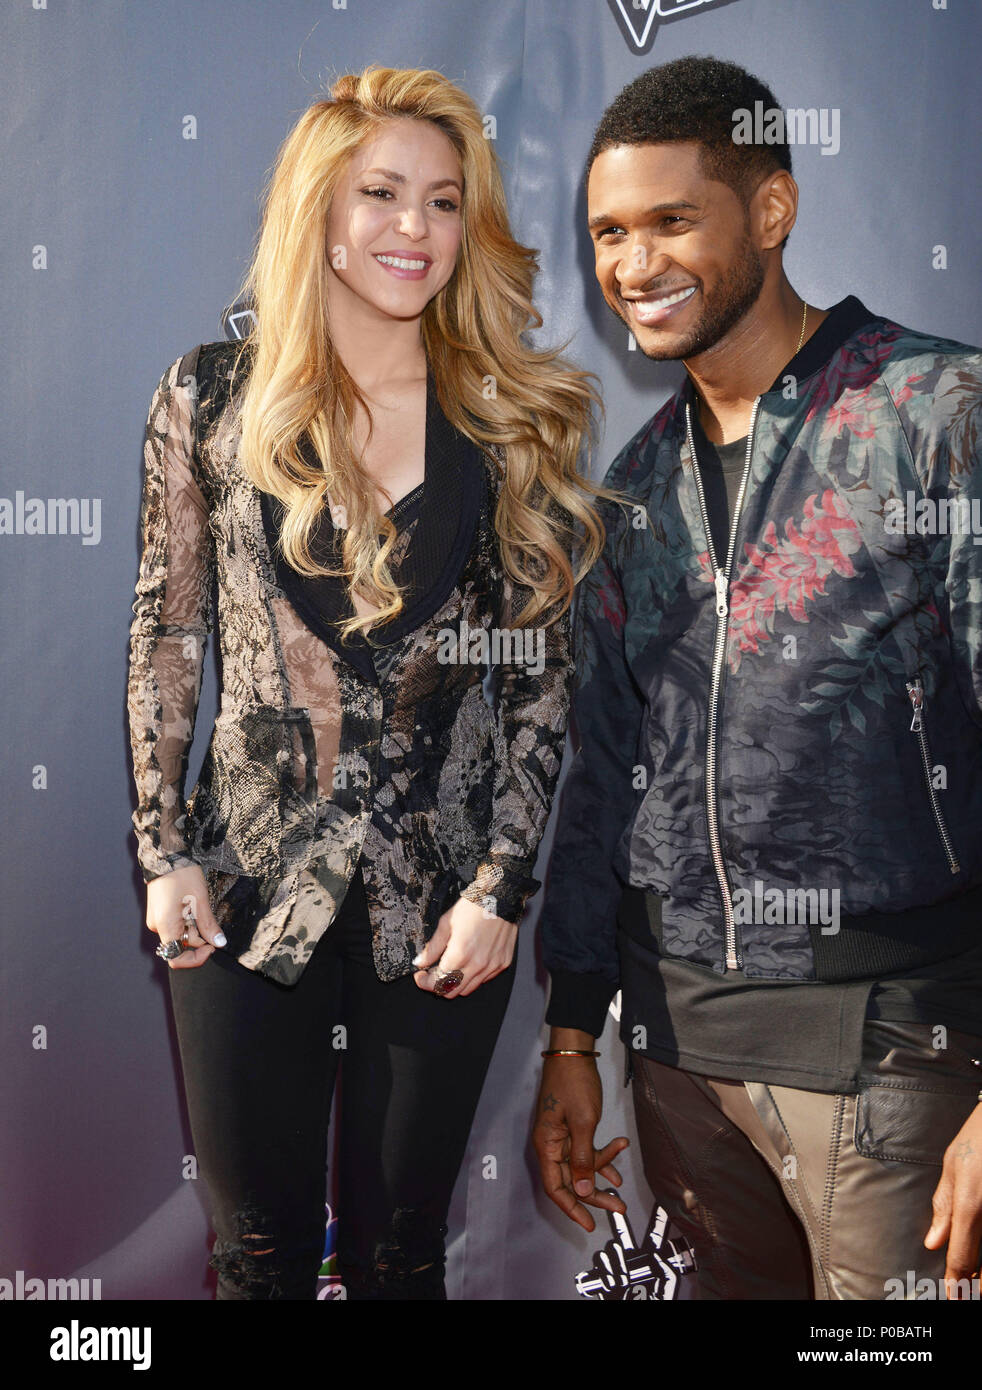 Shakira et Usher : We'Re Retour La voix au parti Sayers Club à Los Angeles. Shakira et Usher 146 cas à Hollywood Life - Californie, Red Carpet Event,  USA, Cinéma, Célébrités, photographie, Bestof,